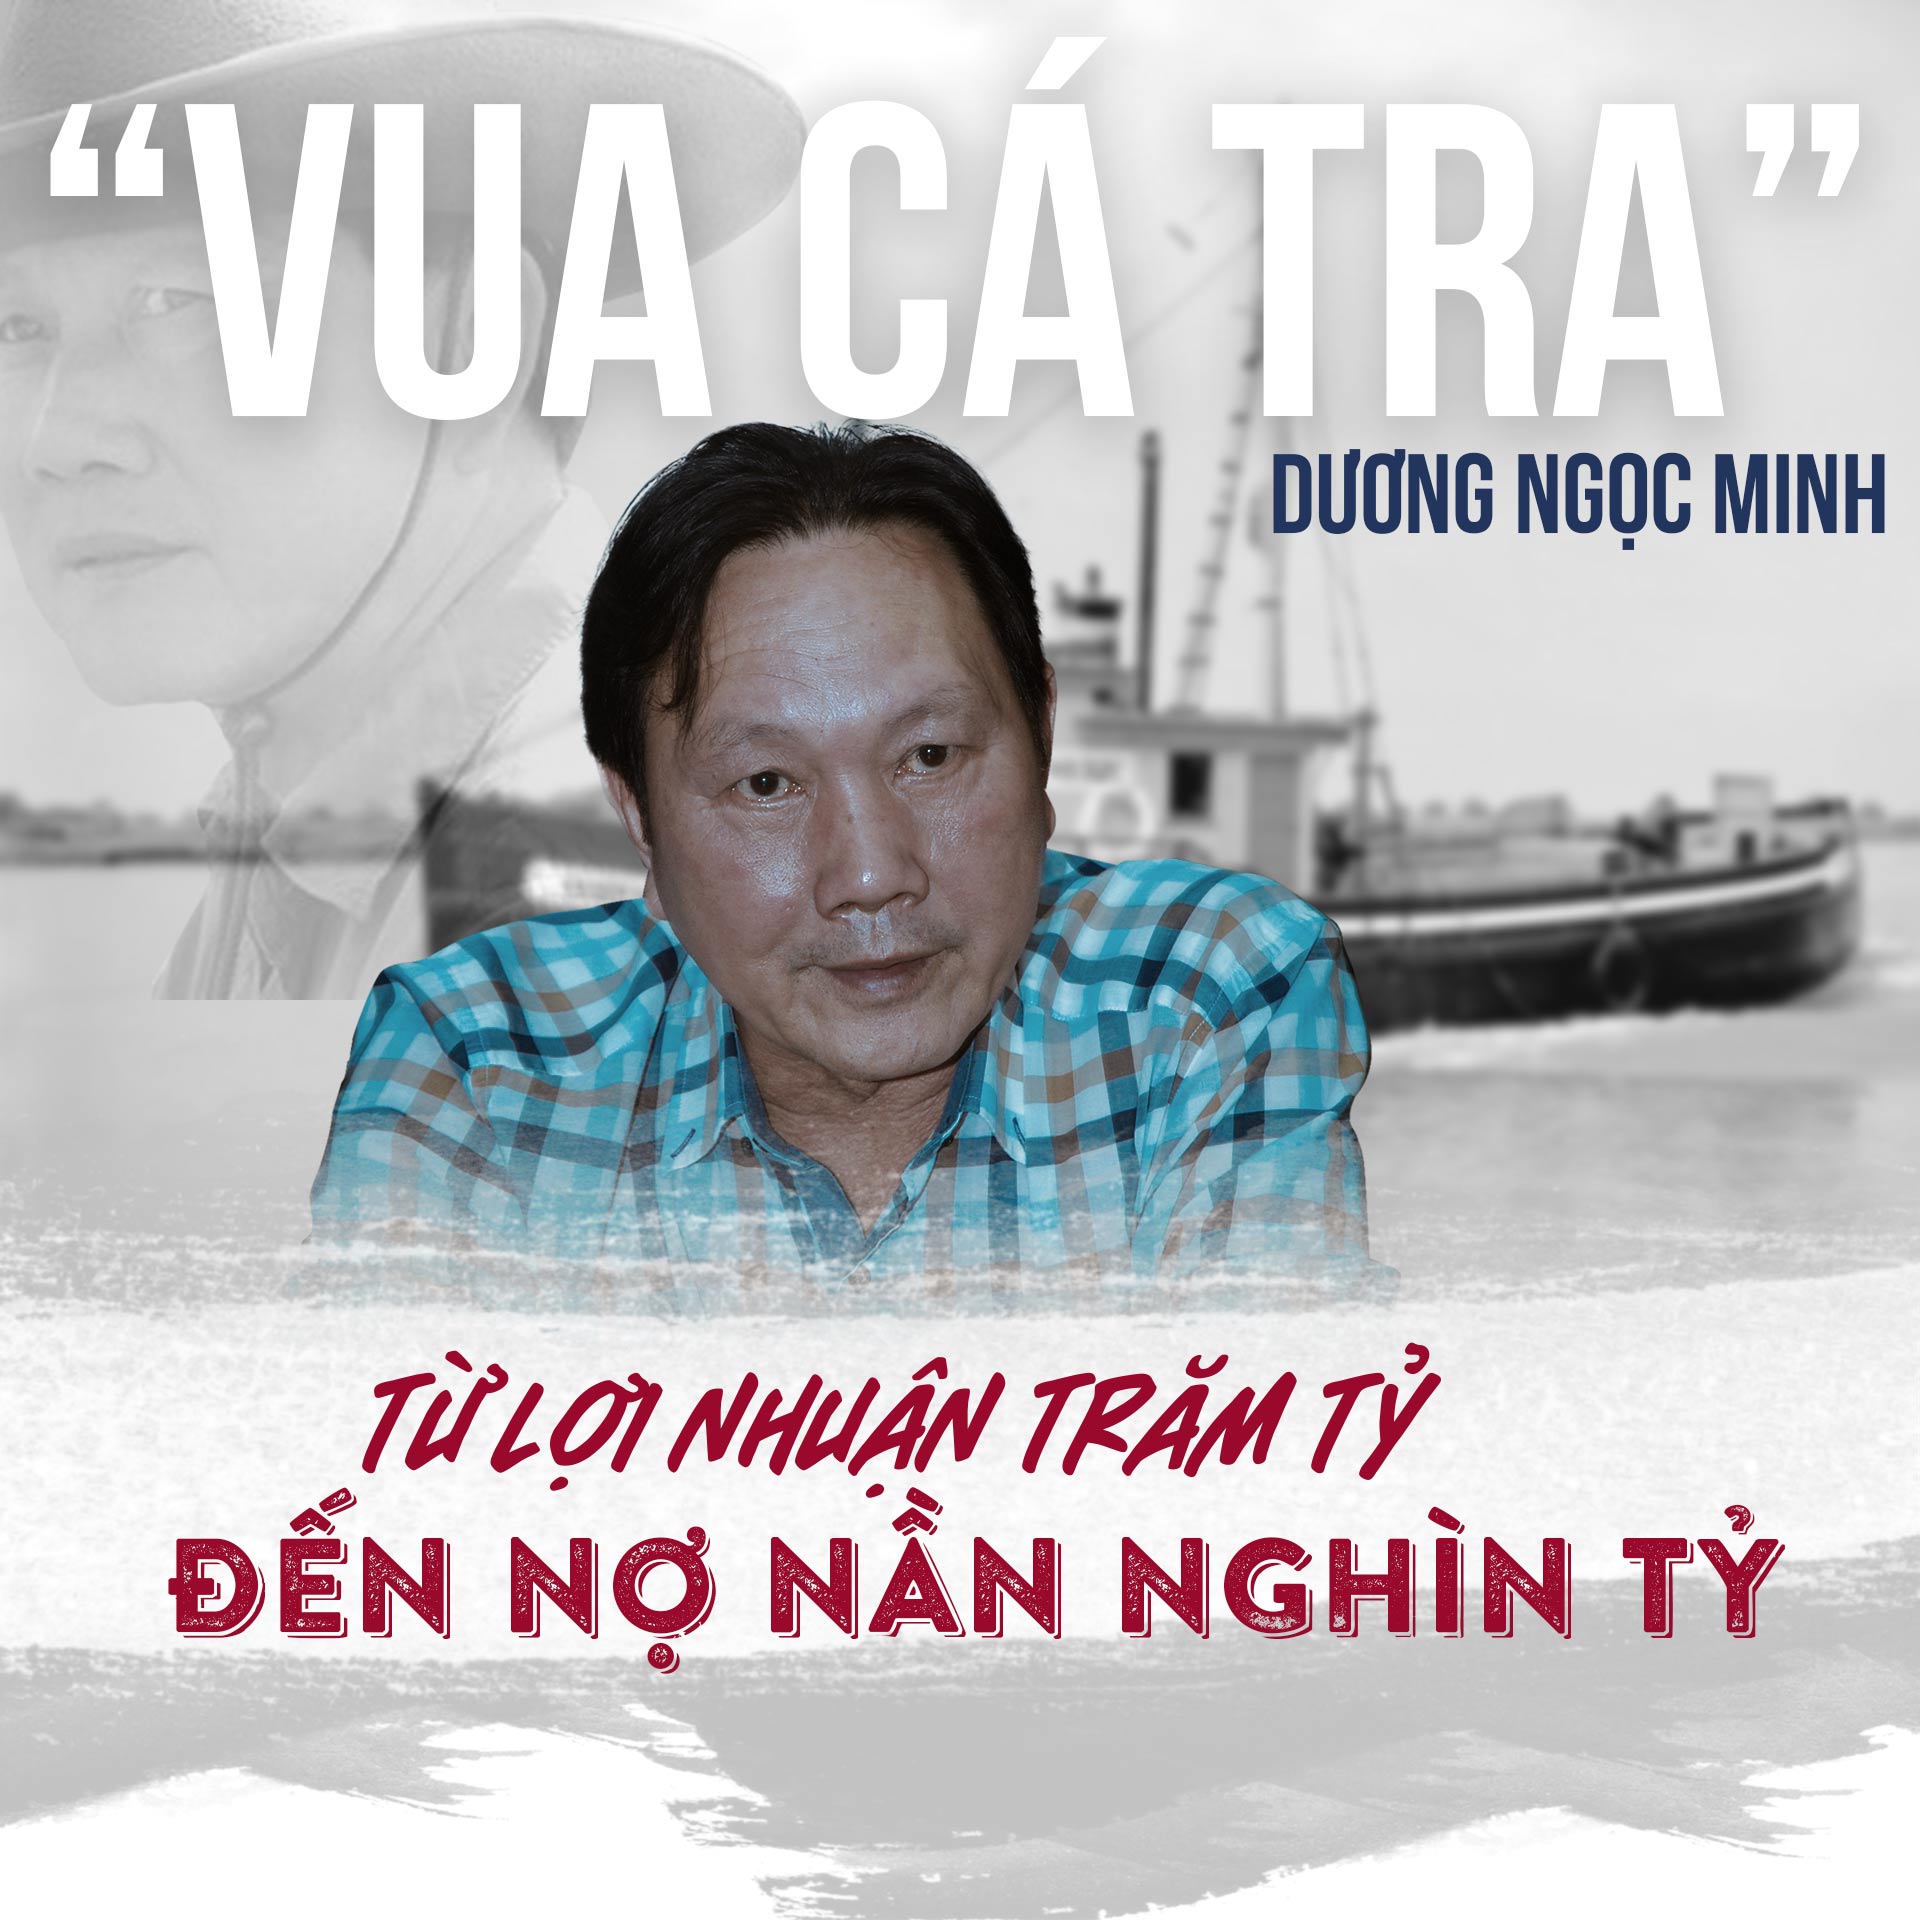 “Vua cá tra” Dương Ngọc Minh: Từ lợi nhuận trăm tỷ đến nợ nần nghìn tỷ - 1